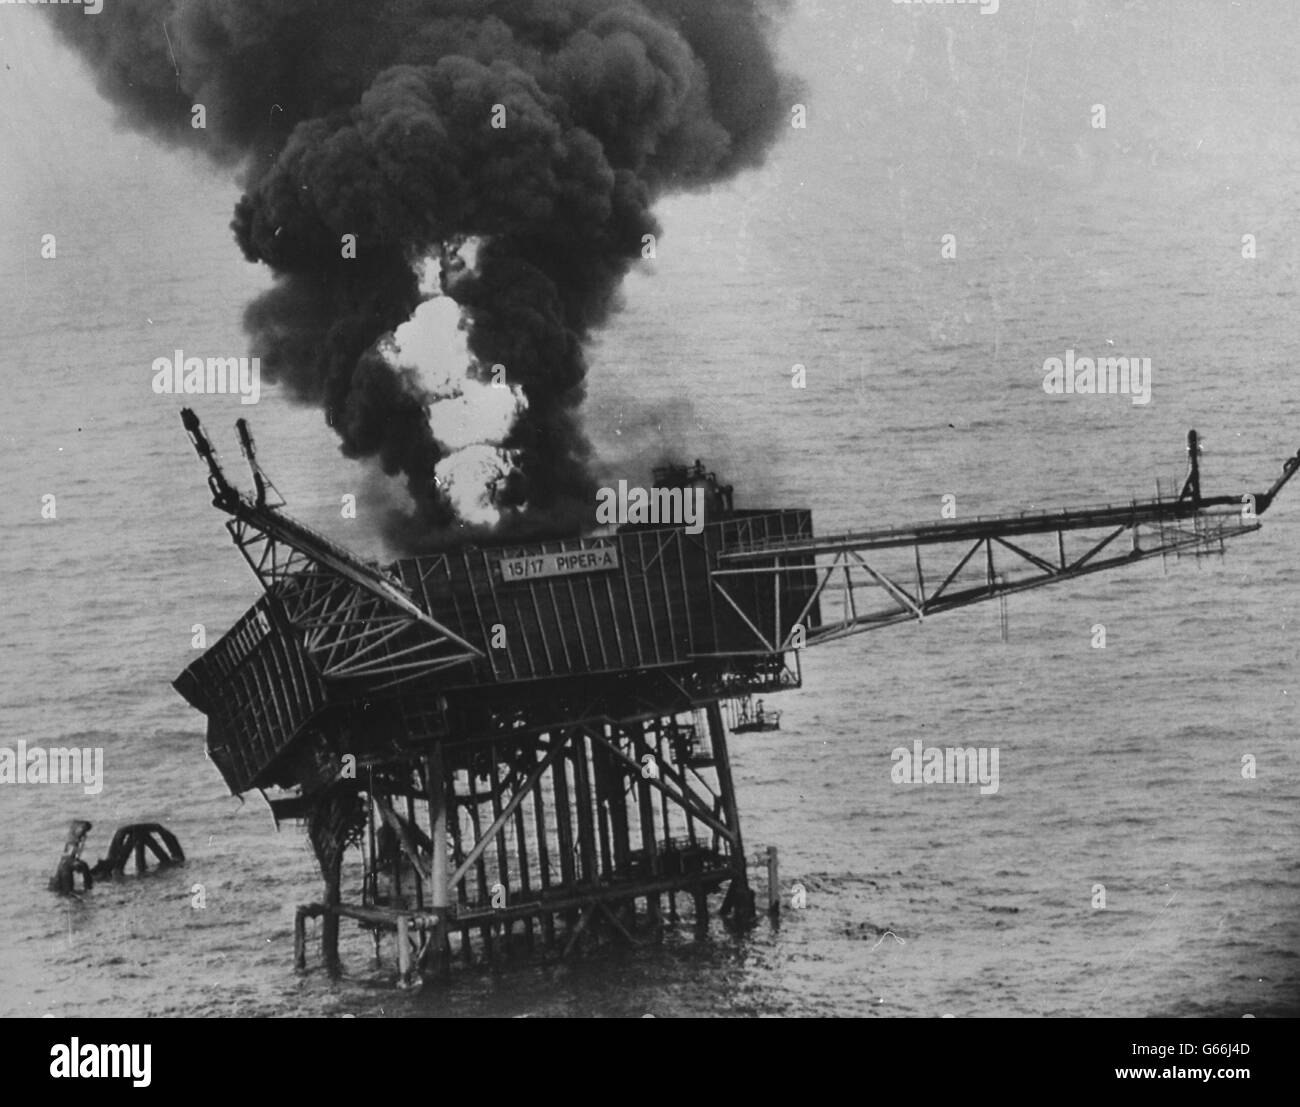 Fumi dalla piattaforma di produzione olio Piper Alpha nel Mare del Nord. *scansione a bassa risoluzione - scansione ad alta risoluzione su richiesta Foto Stock